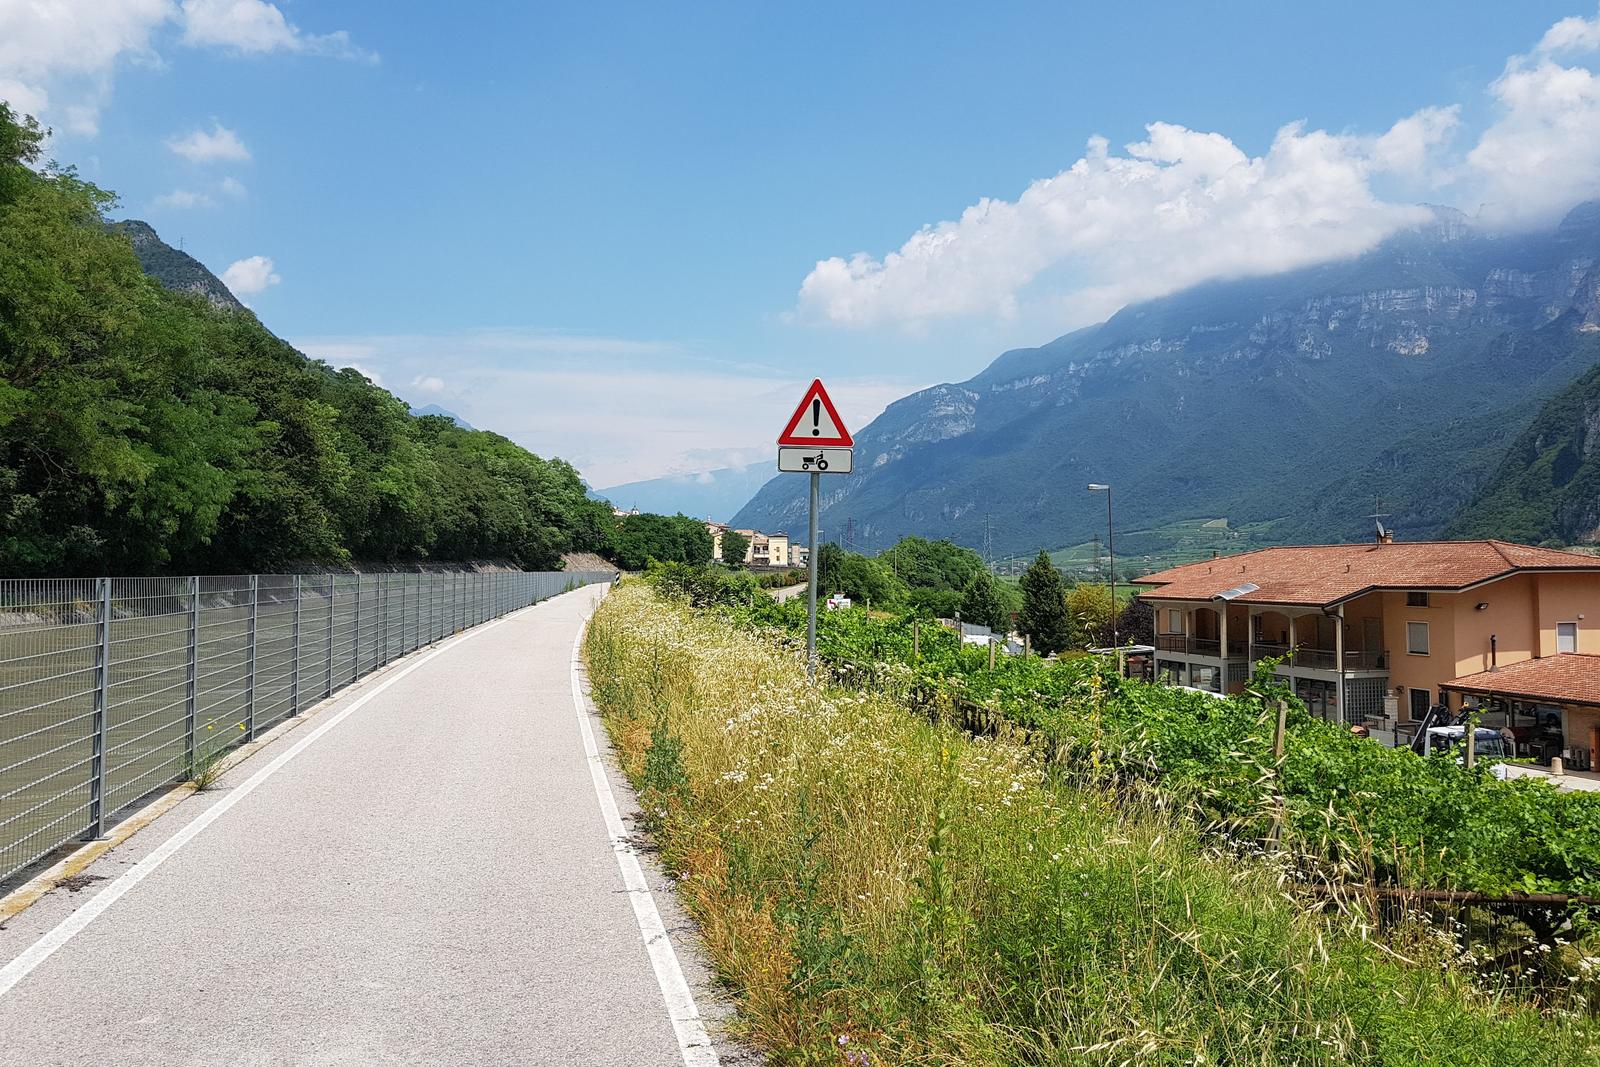 July 5 Lake Garda to Isera